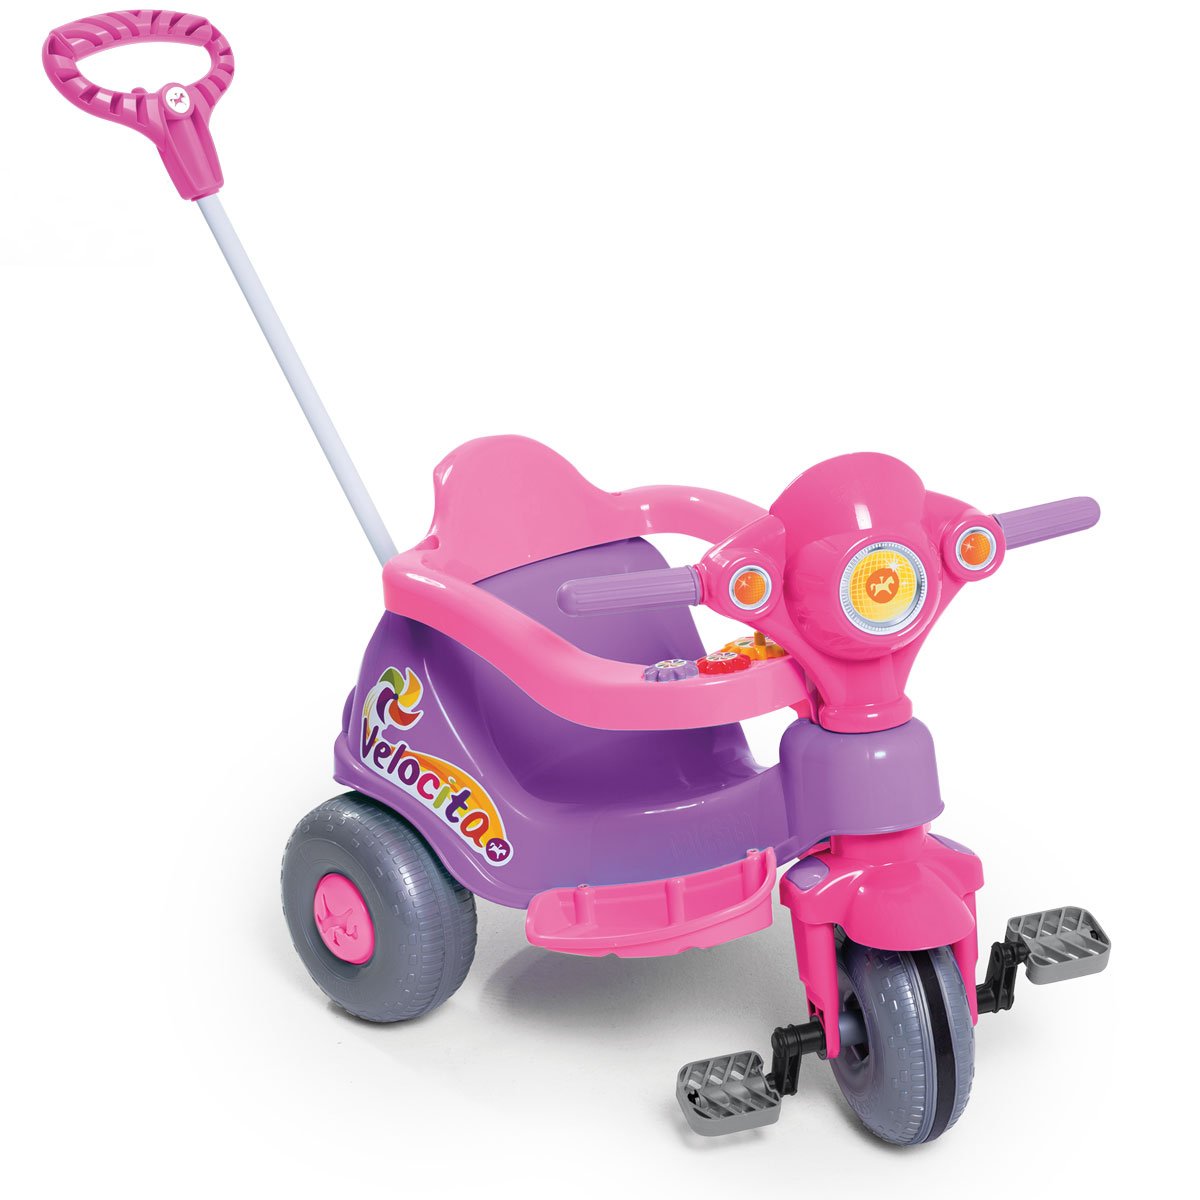 Triciclo Infantil Calesita Velocita Classic - 2 Em 1 - Pedal